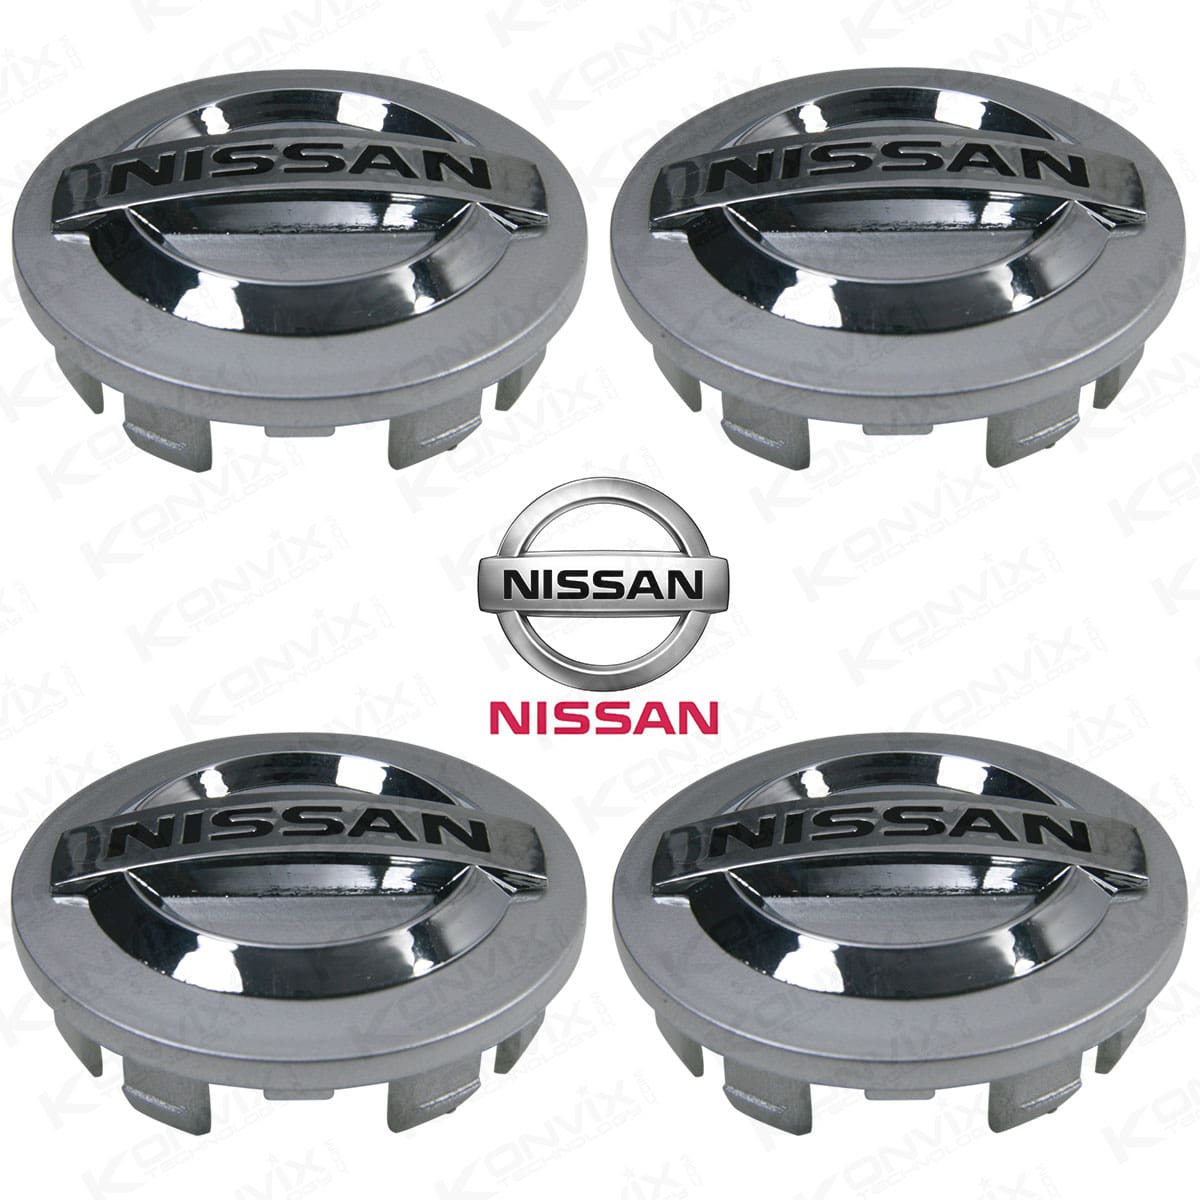 Lot de 4 Caches moyeux NISSAN diamètre 53 mm Logo Chrome et noir fond mat